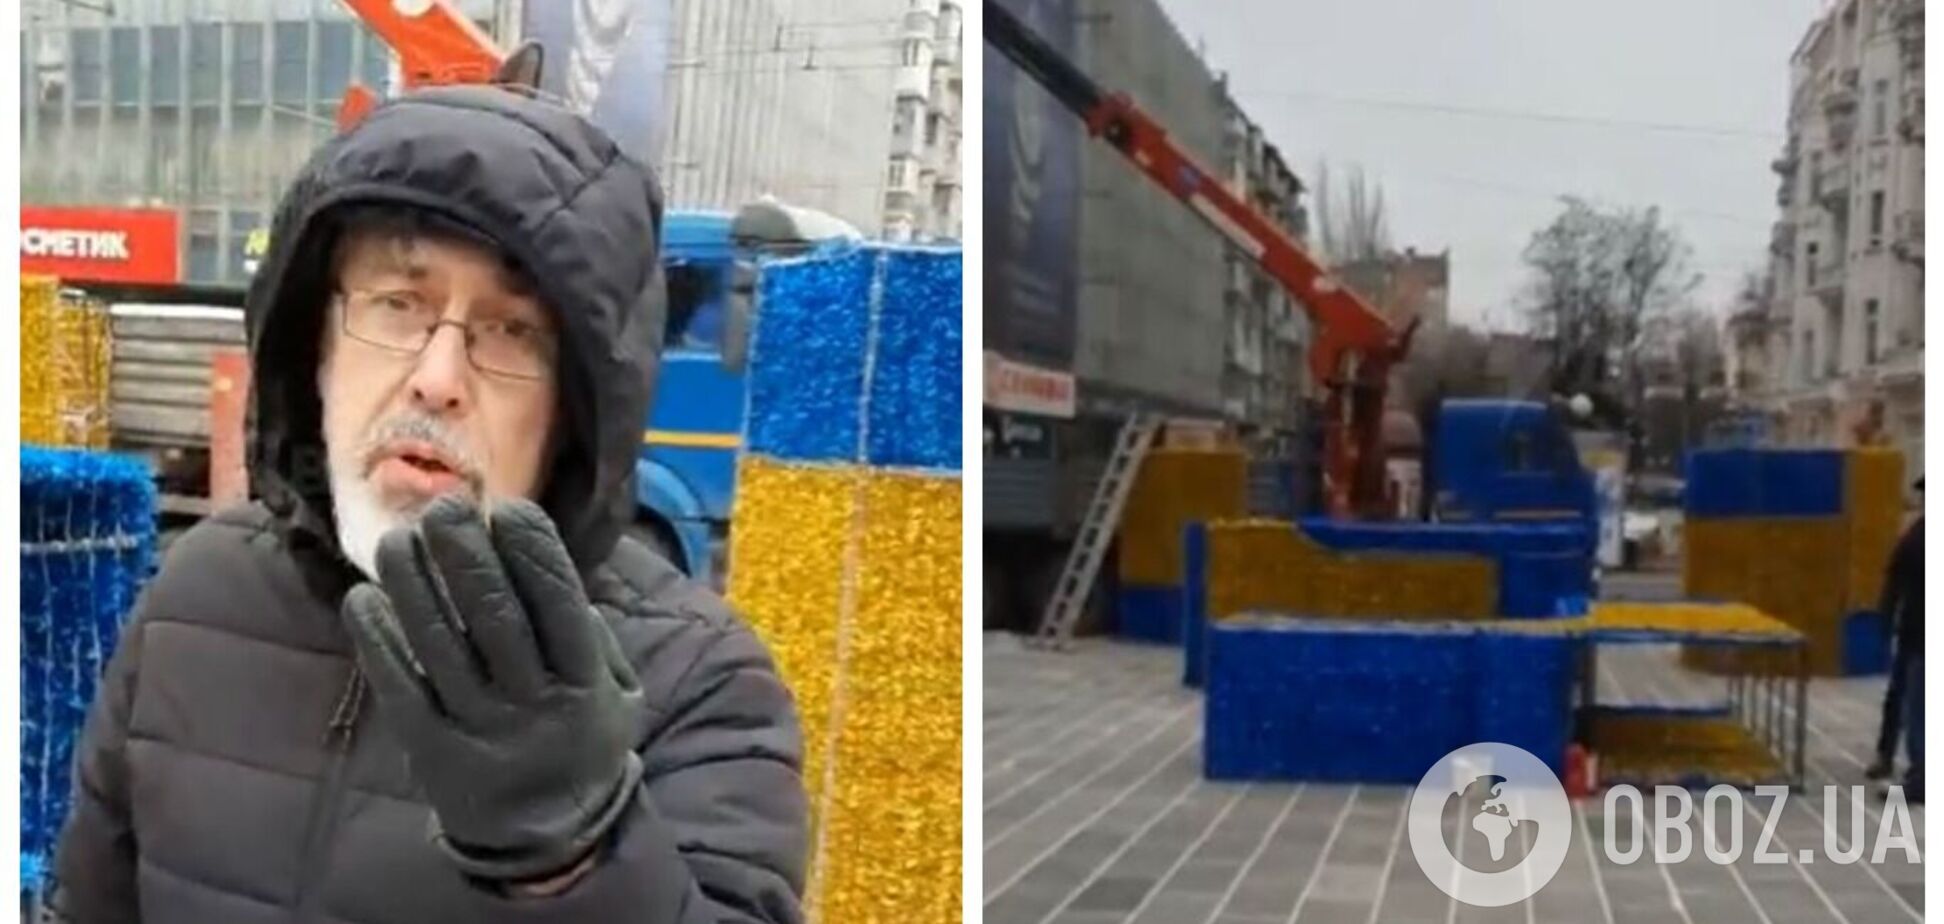 В Ростове-на-Дону женщина устроила истерику из-за сине-желтой инсталляции к Новому году: привиделась поддержка Украины. Видео